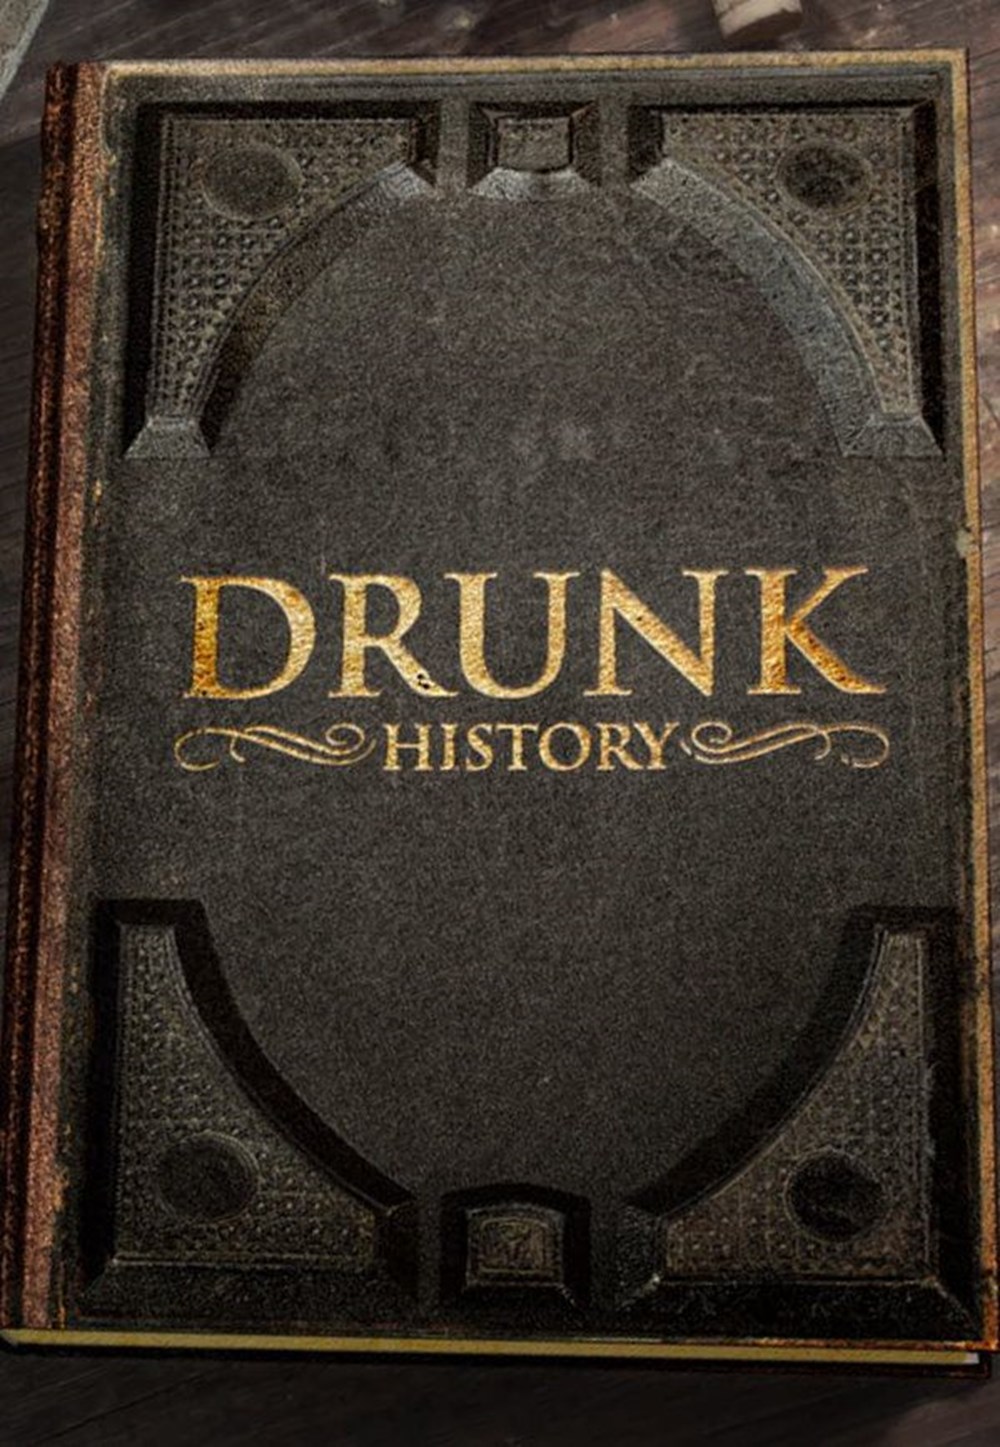 Drunk stories